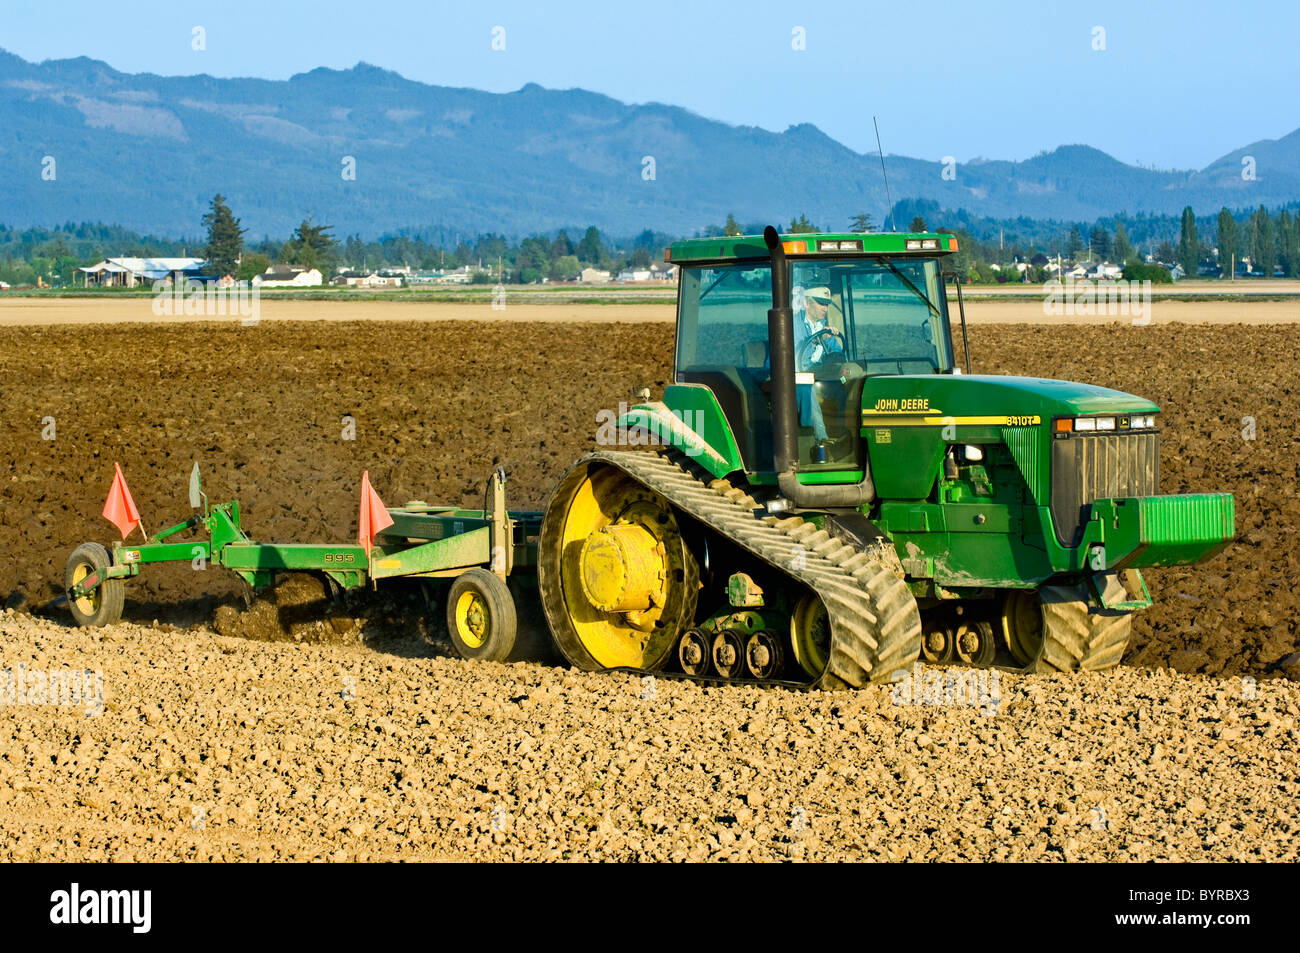 Ein John Deere verfolgt Traktor ziehen einen reversiblen Pflug bereitet ein Feld für die Bepflanzung Kartoffeln / in der Nähe von Burlington, Washington, USA Stockfoto